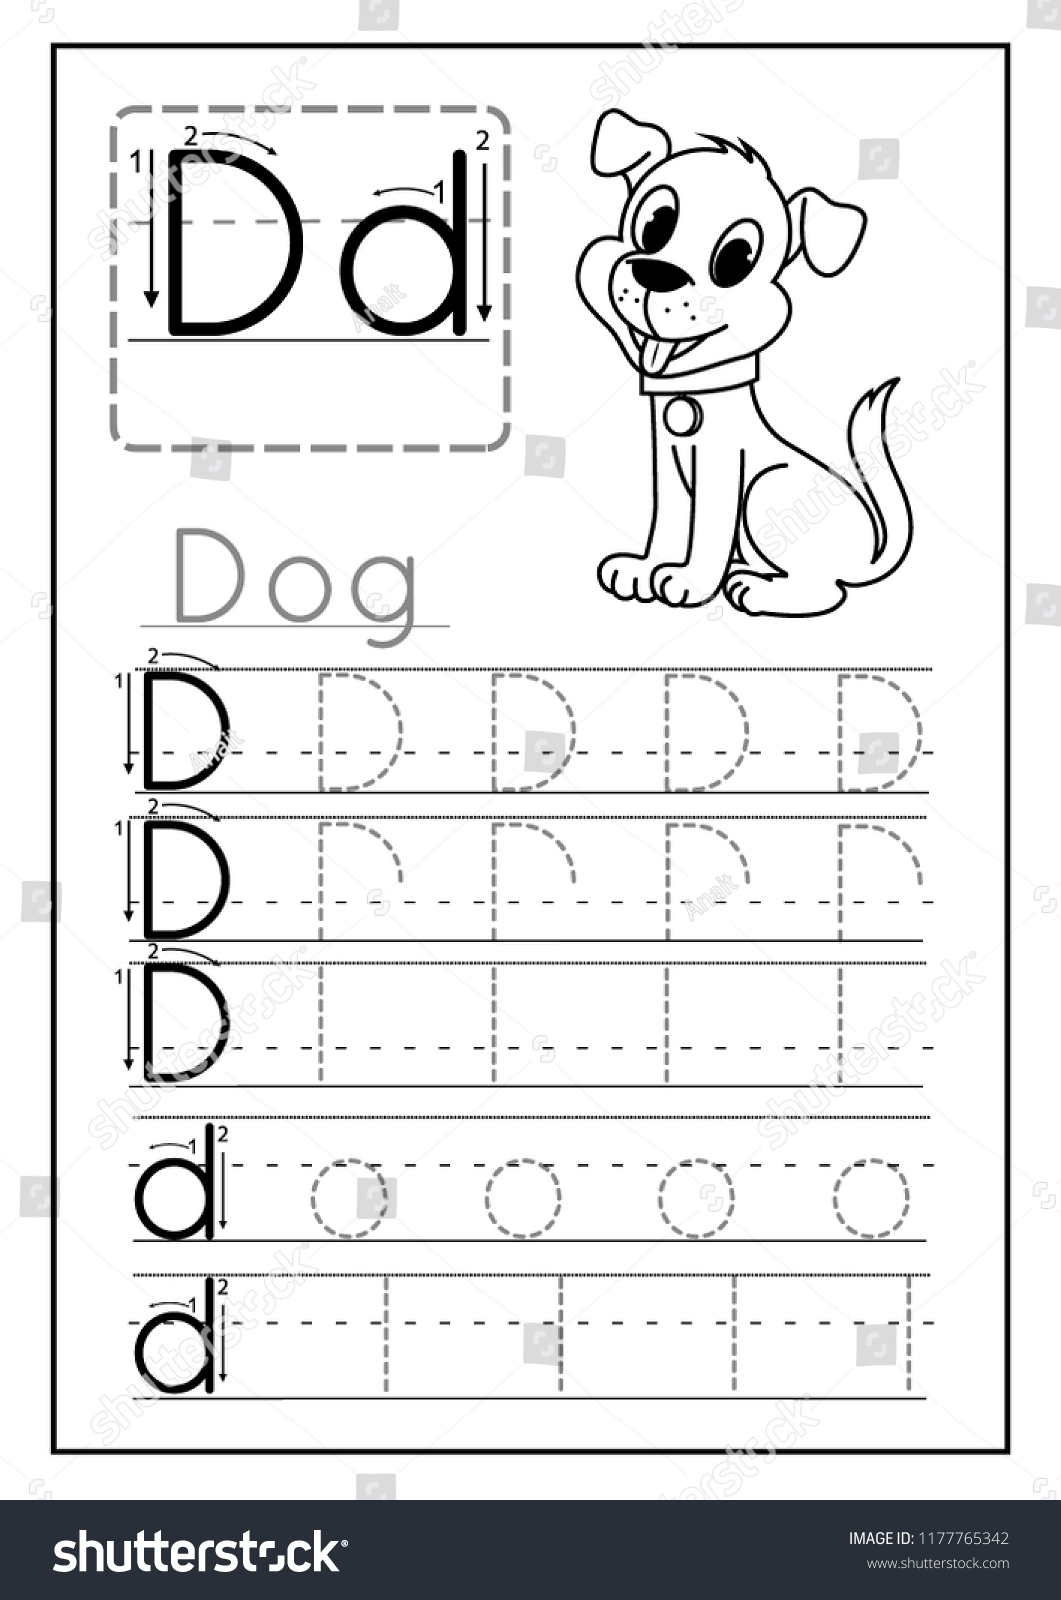 Writing Practice Letter D Printable Worksheet Stock Vector Inside Letter D Worksheet For Preschool